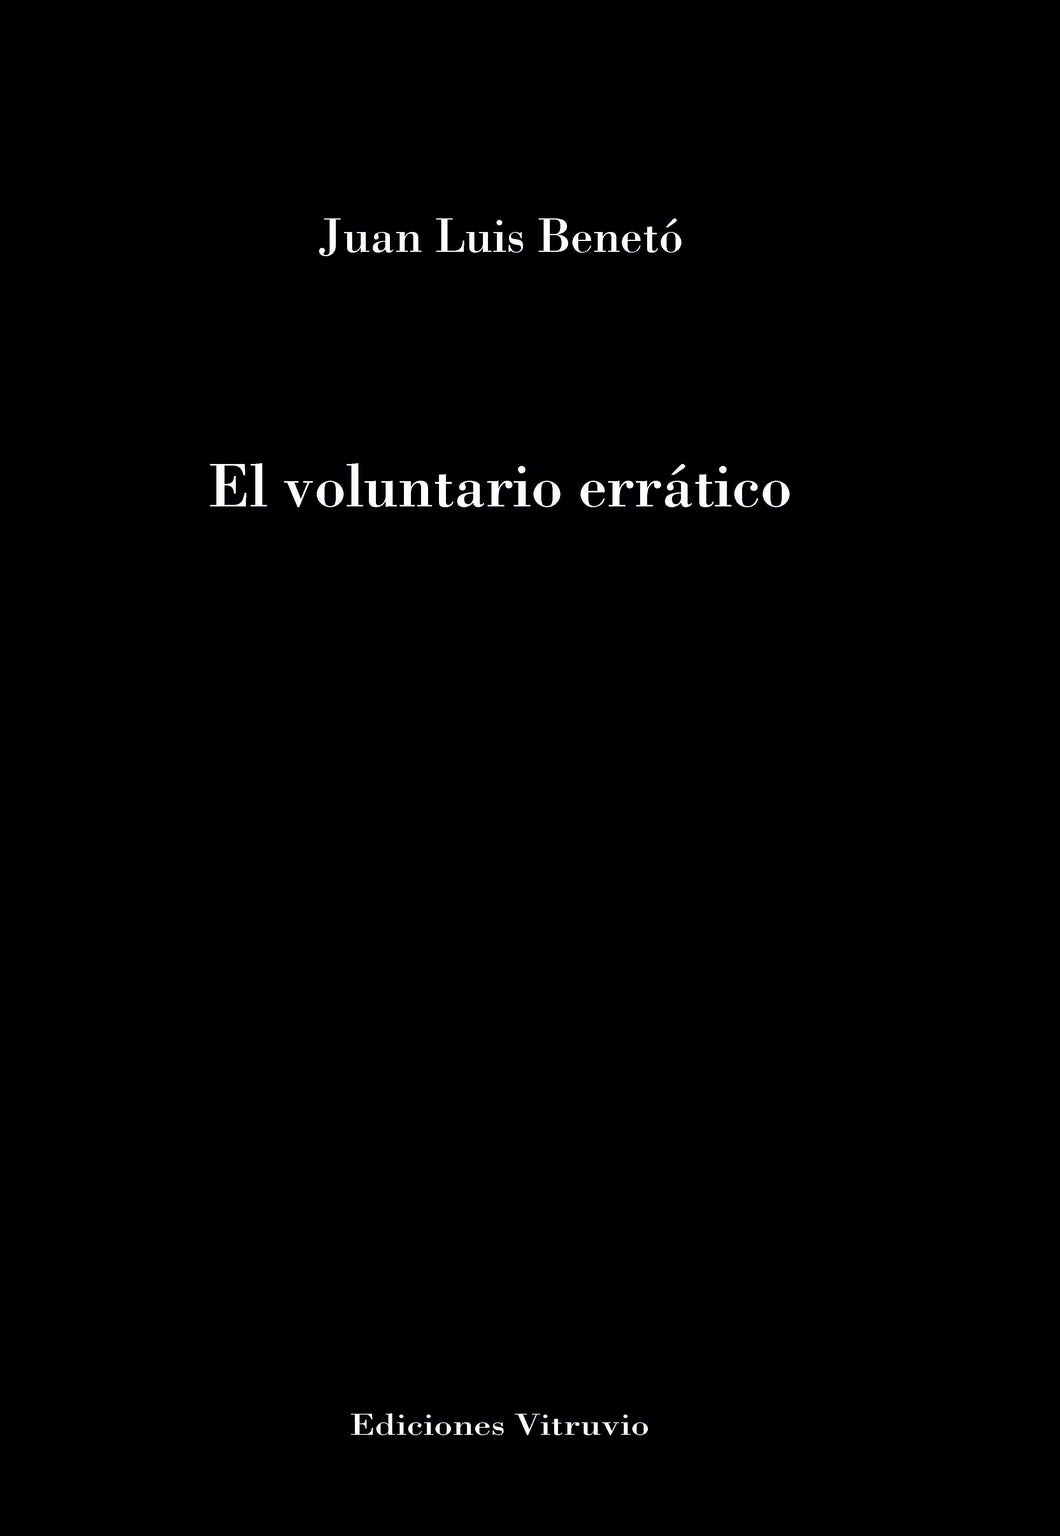 El voluntario errático, de Juan Luis Benetó